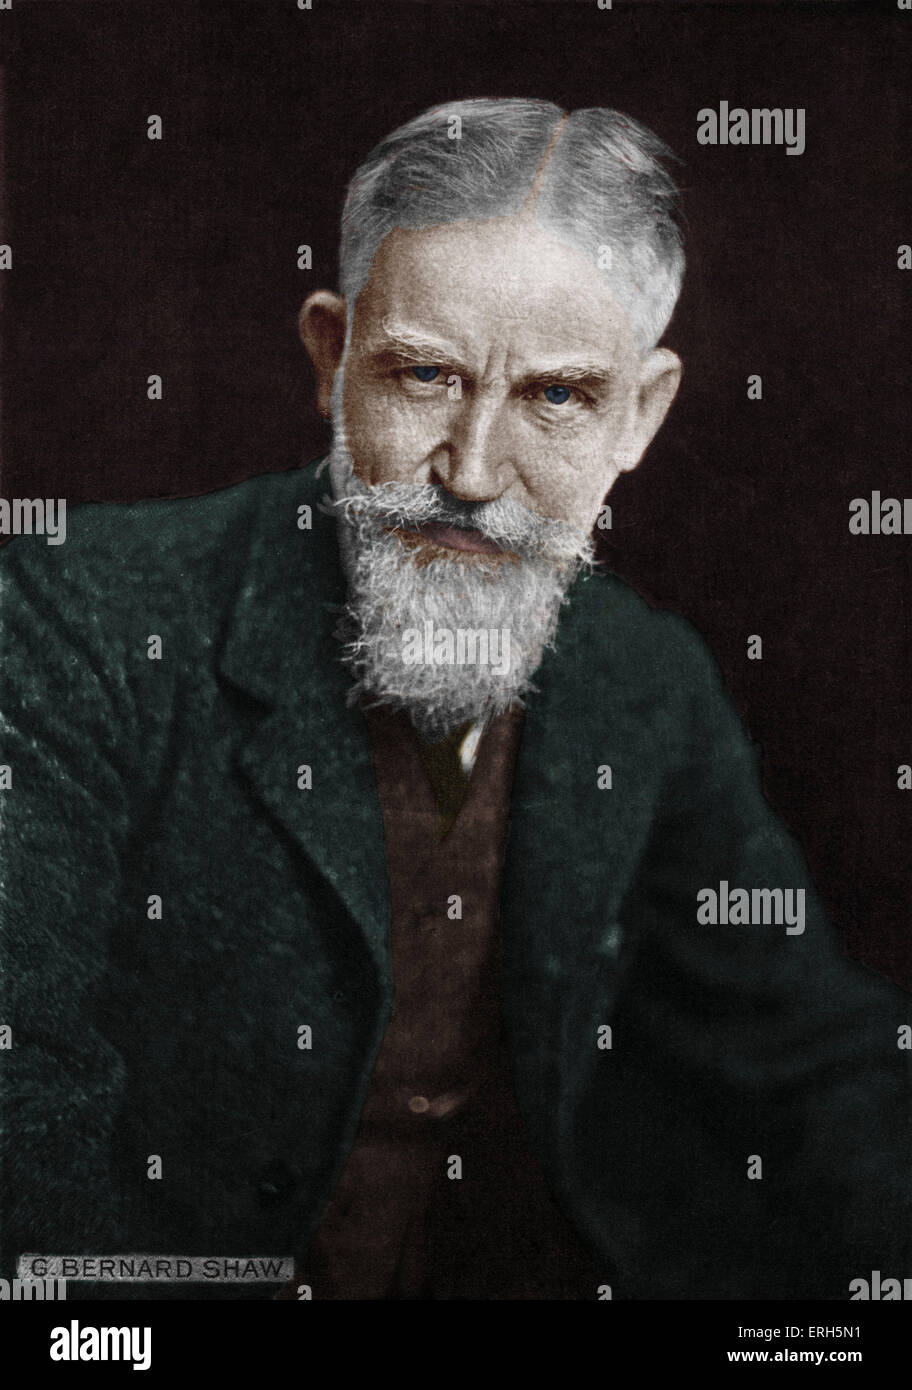 George Bernard Shaw - portrait. L'écrivain anglais (1856-1950) Banque D'Images